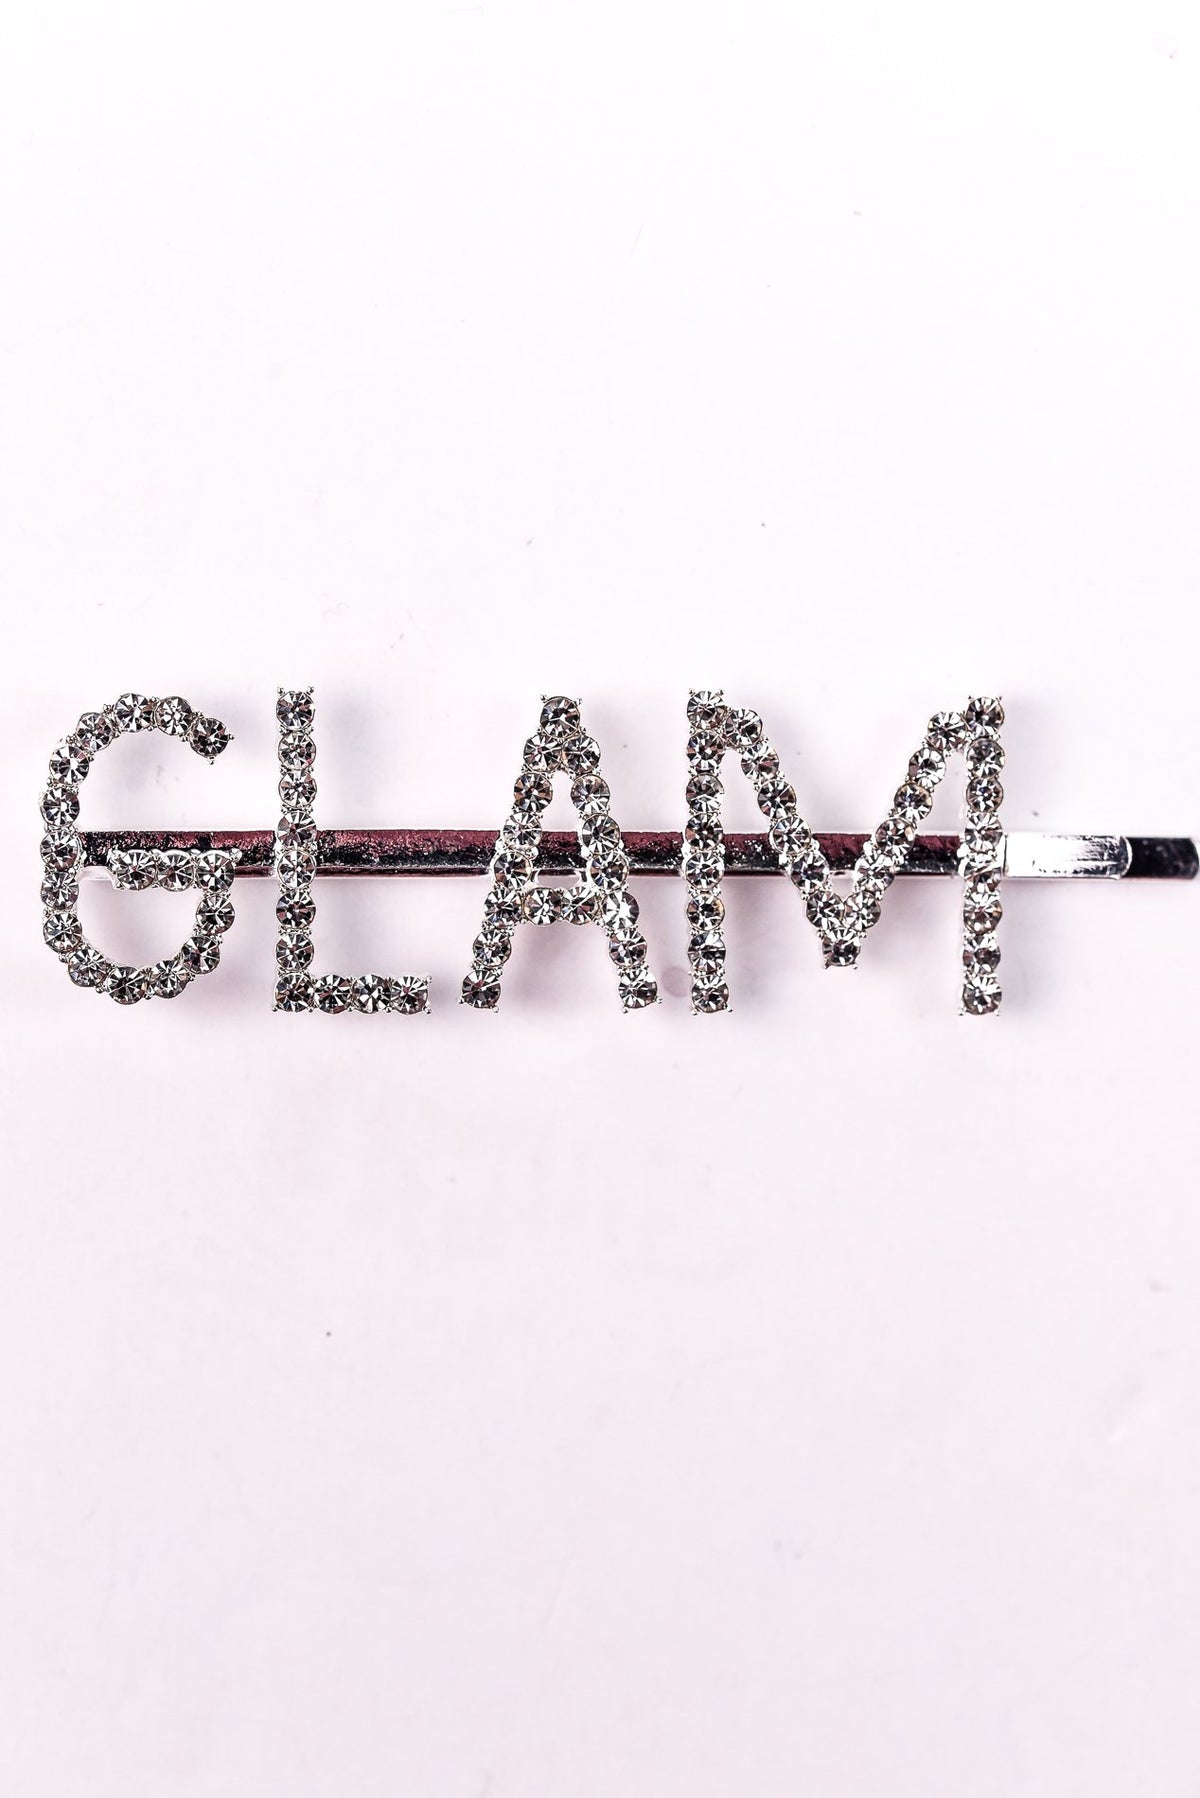 'Glam' Silver Bling Hair Clip - CLP158SI